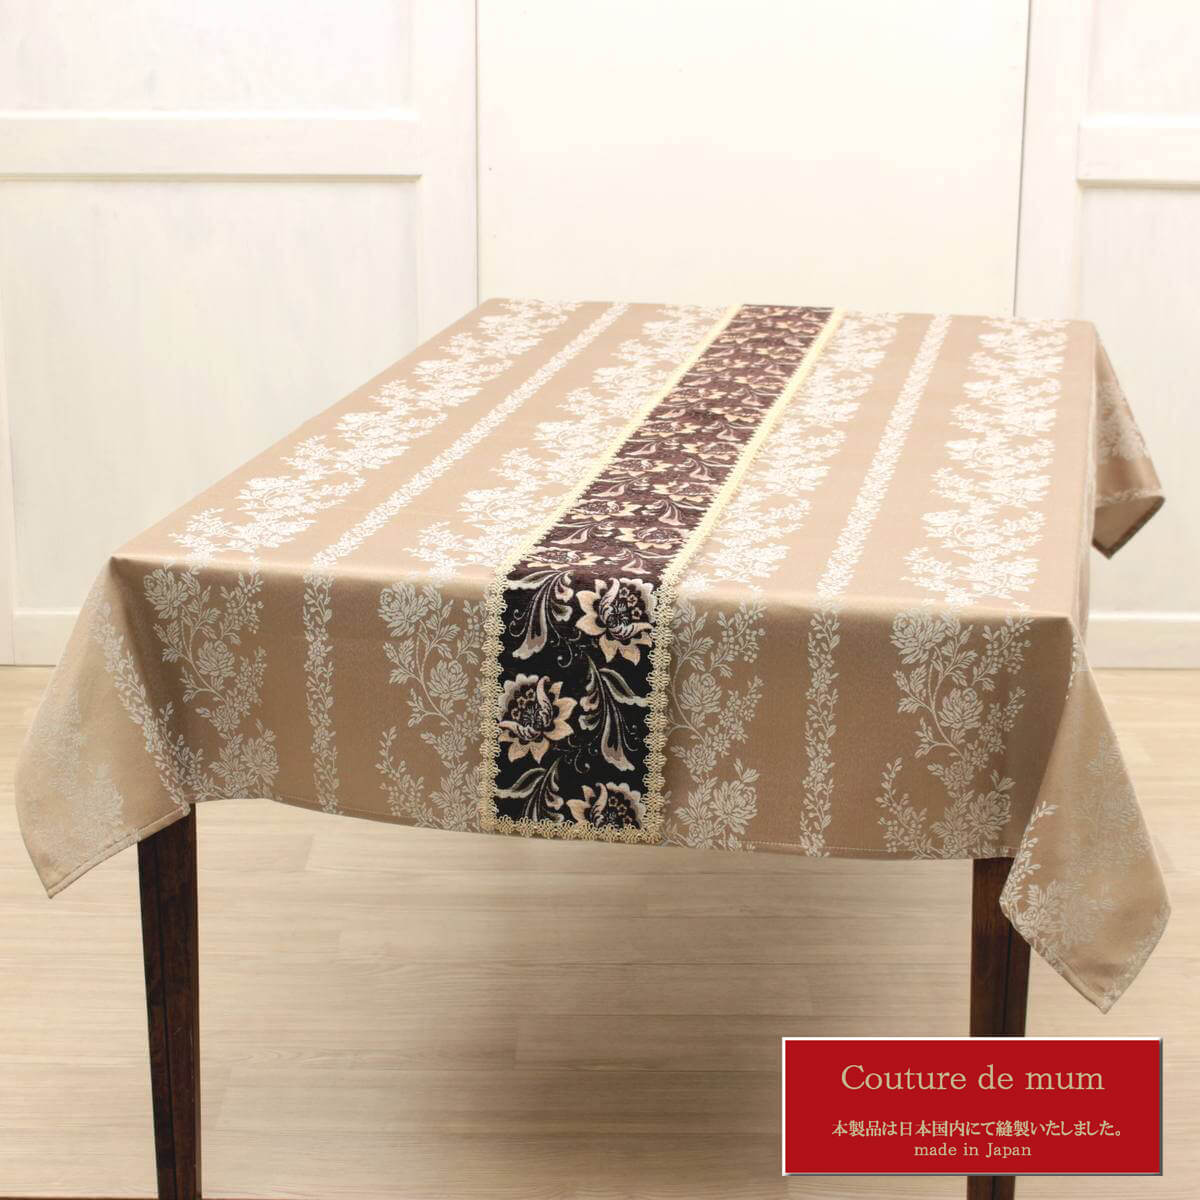 シェニール織のテーブルランナー（約16×200cm）です。